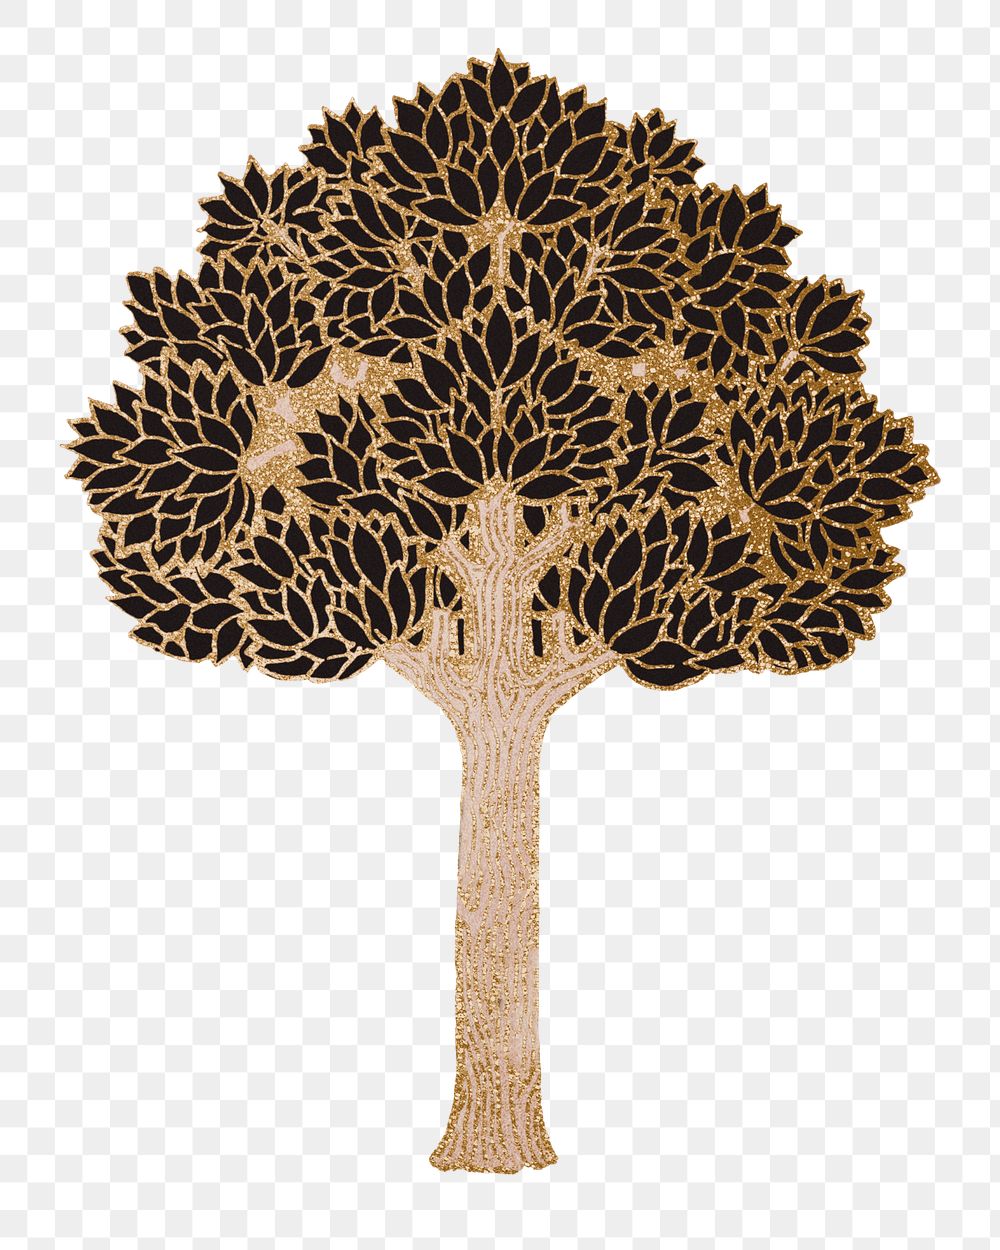 Gold tree png sticker, vintage botanical illustration, transparent background